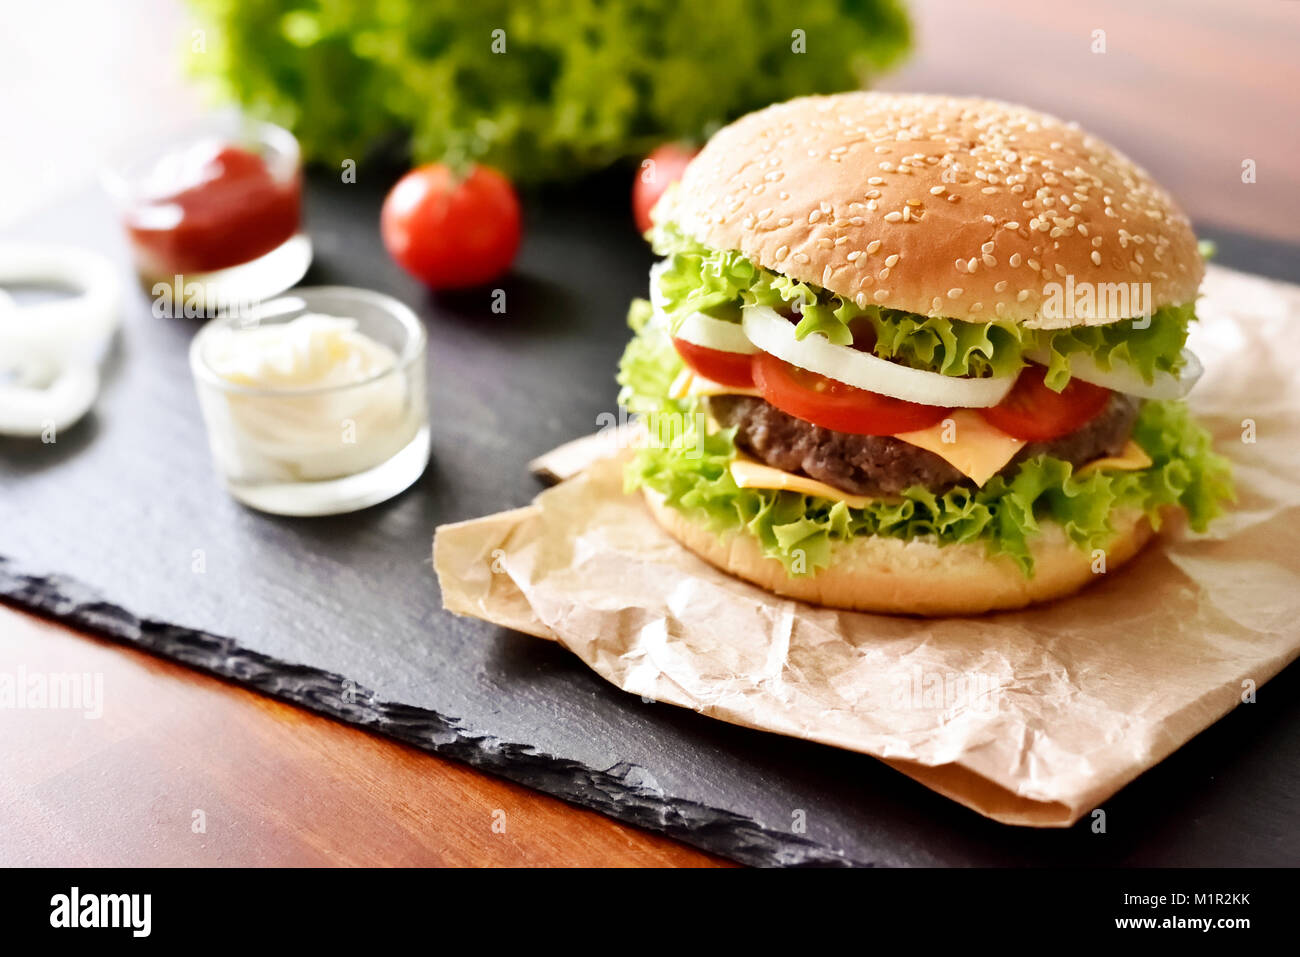 Hamburger freschi, hamburger o Cheeseburger con ketchup e maionese, cipolle e insalata. Deliziosi burger su una piastra di ardesia. Il fast food dello sfondo. Foto Stock